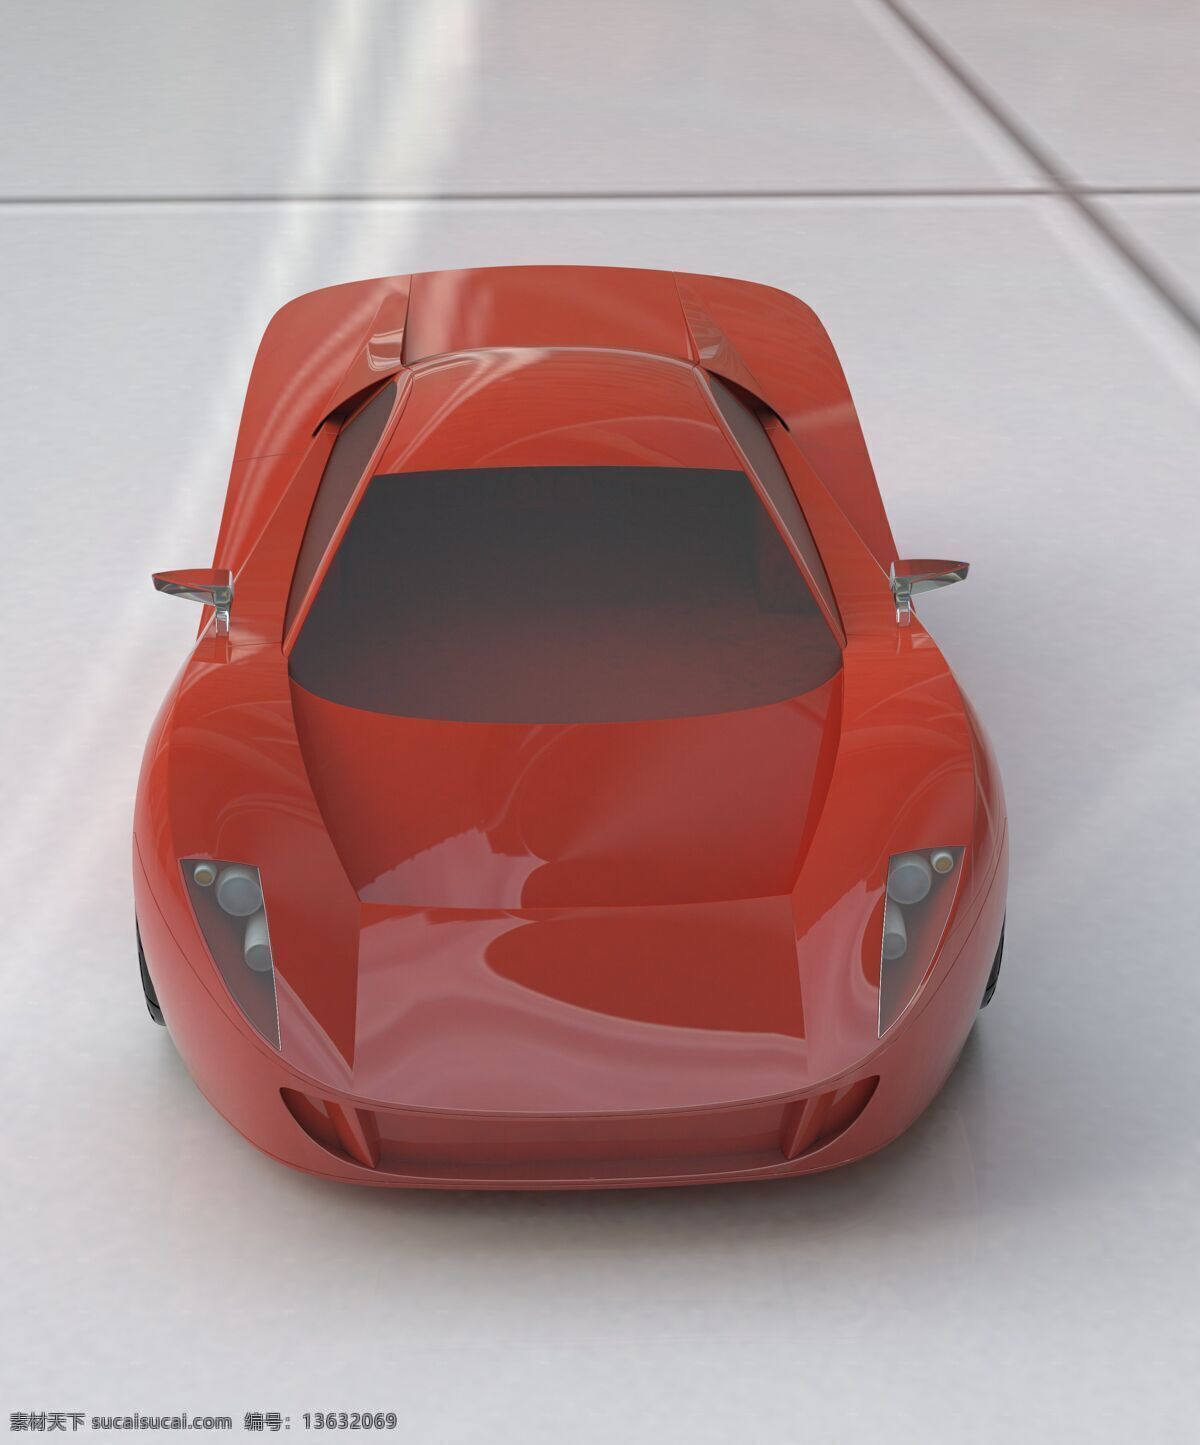 汽车图片 3d设计 跑车 跑车图片 汽车 汽车效果图 汽车模型图 汽车图品 3d模型素材 其他3d模型